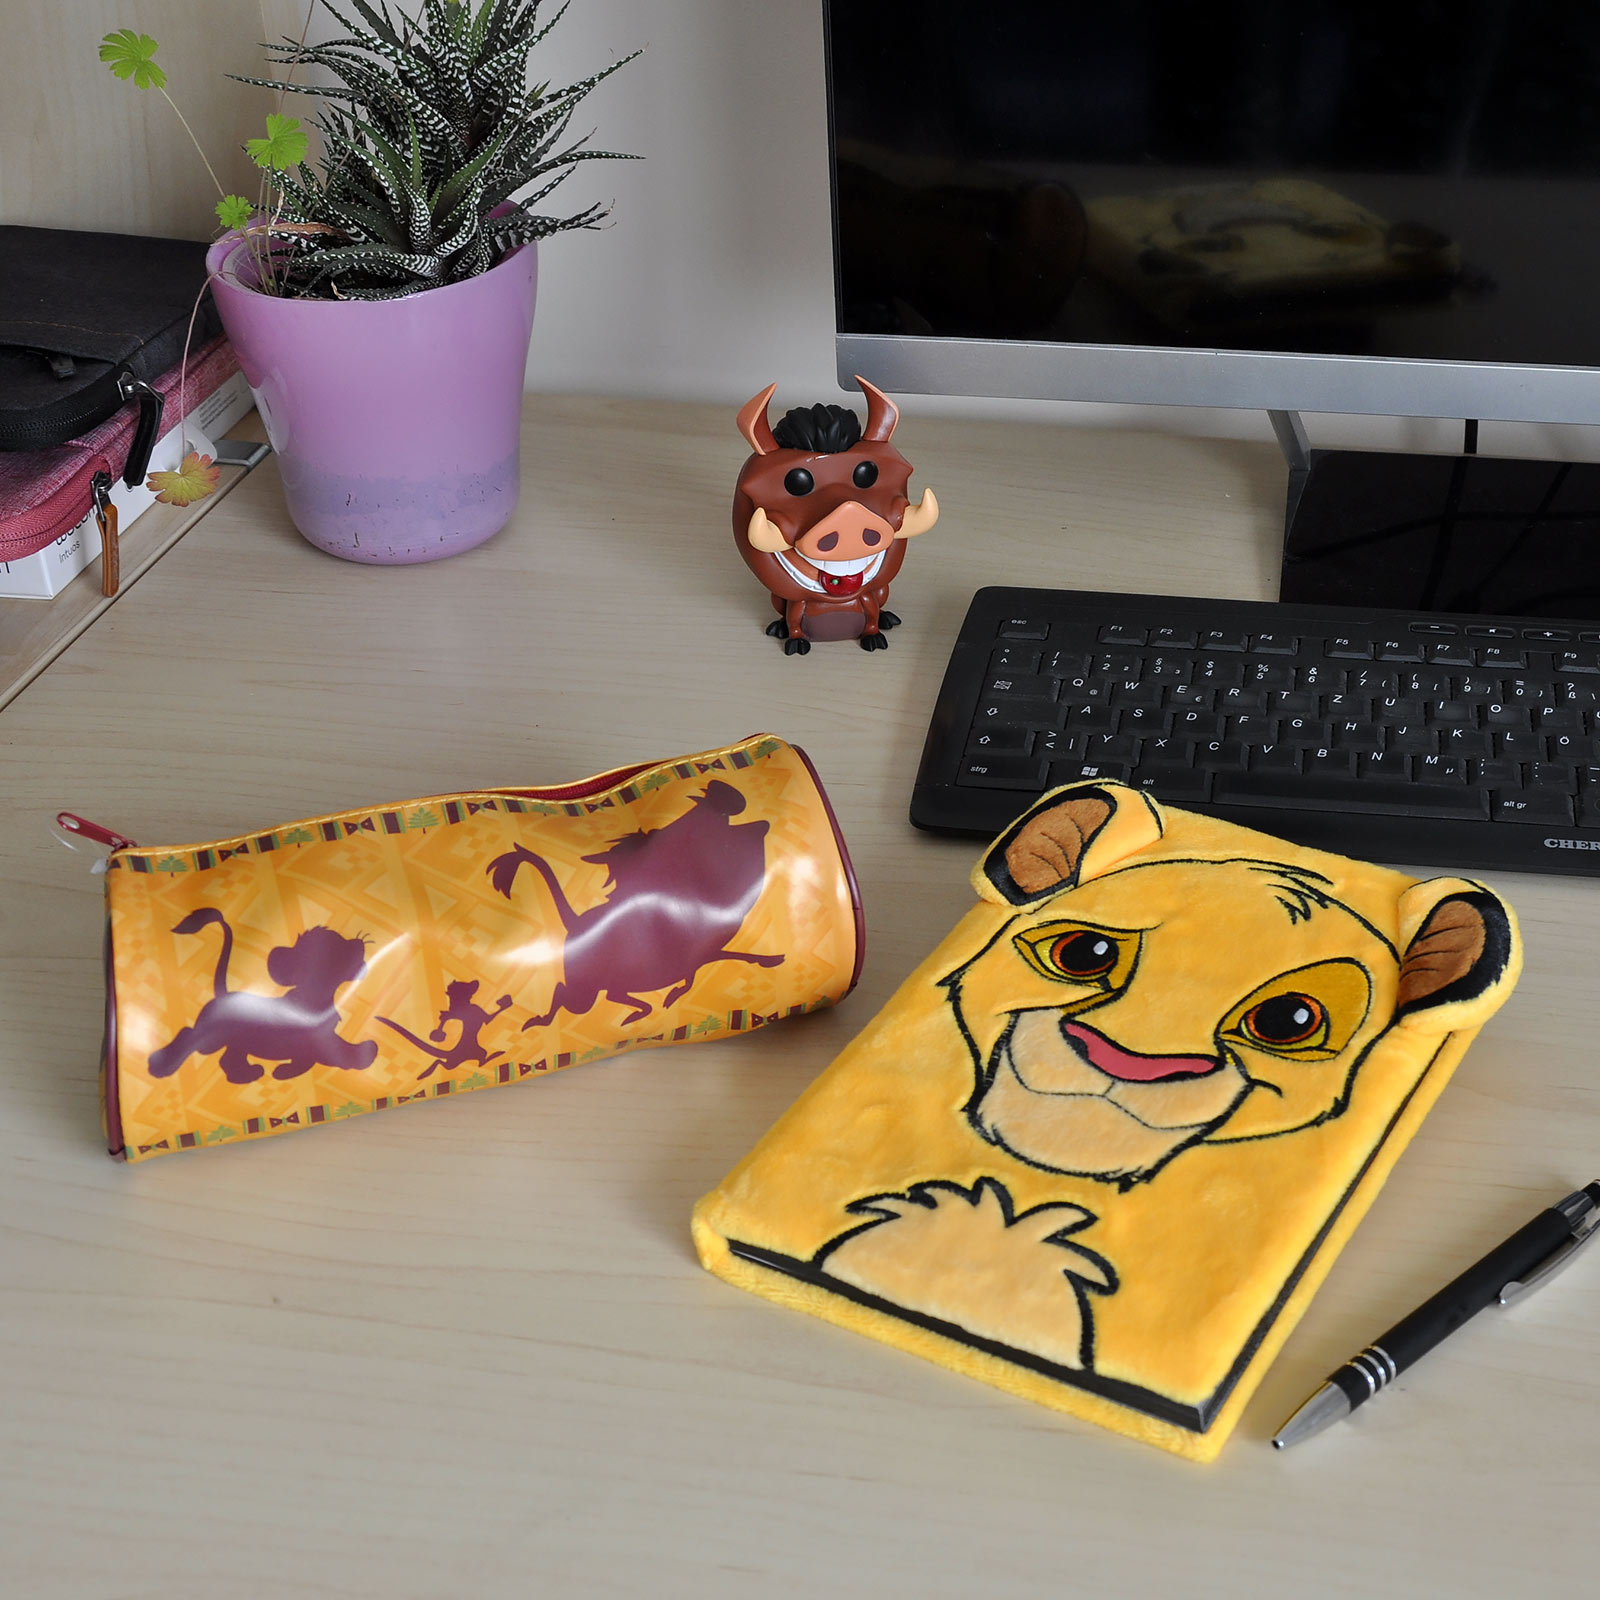 Lion King - Simba & Friends Pencil Case